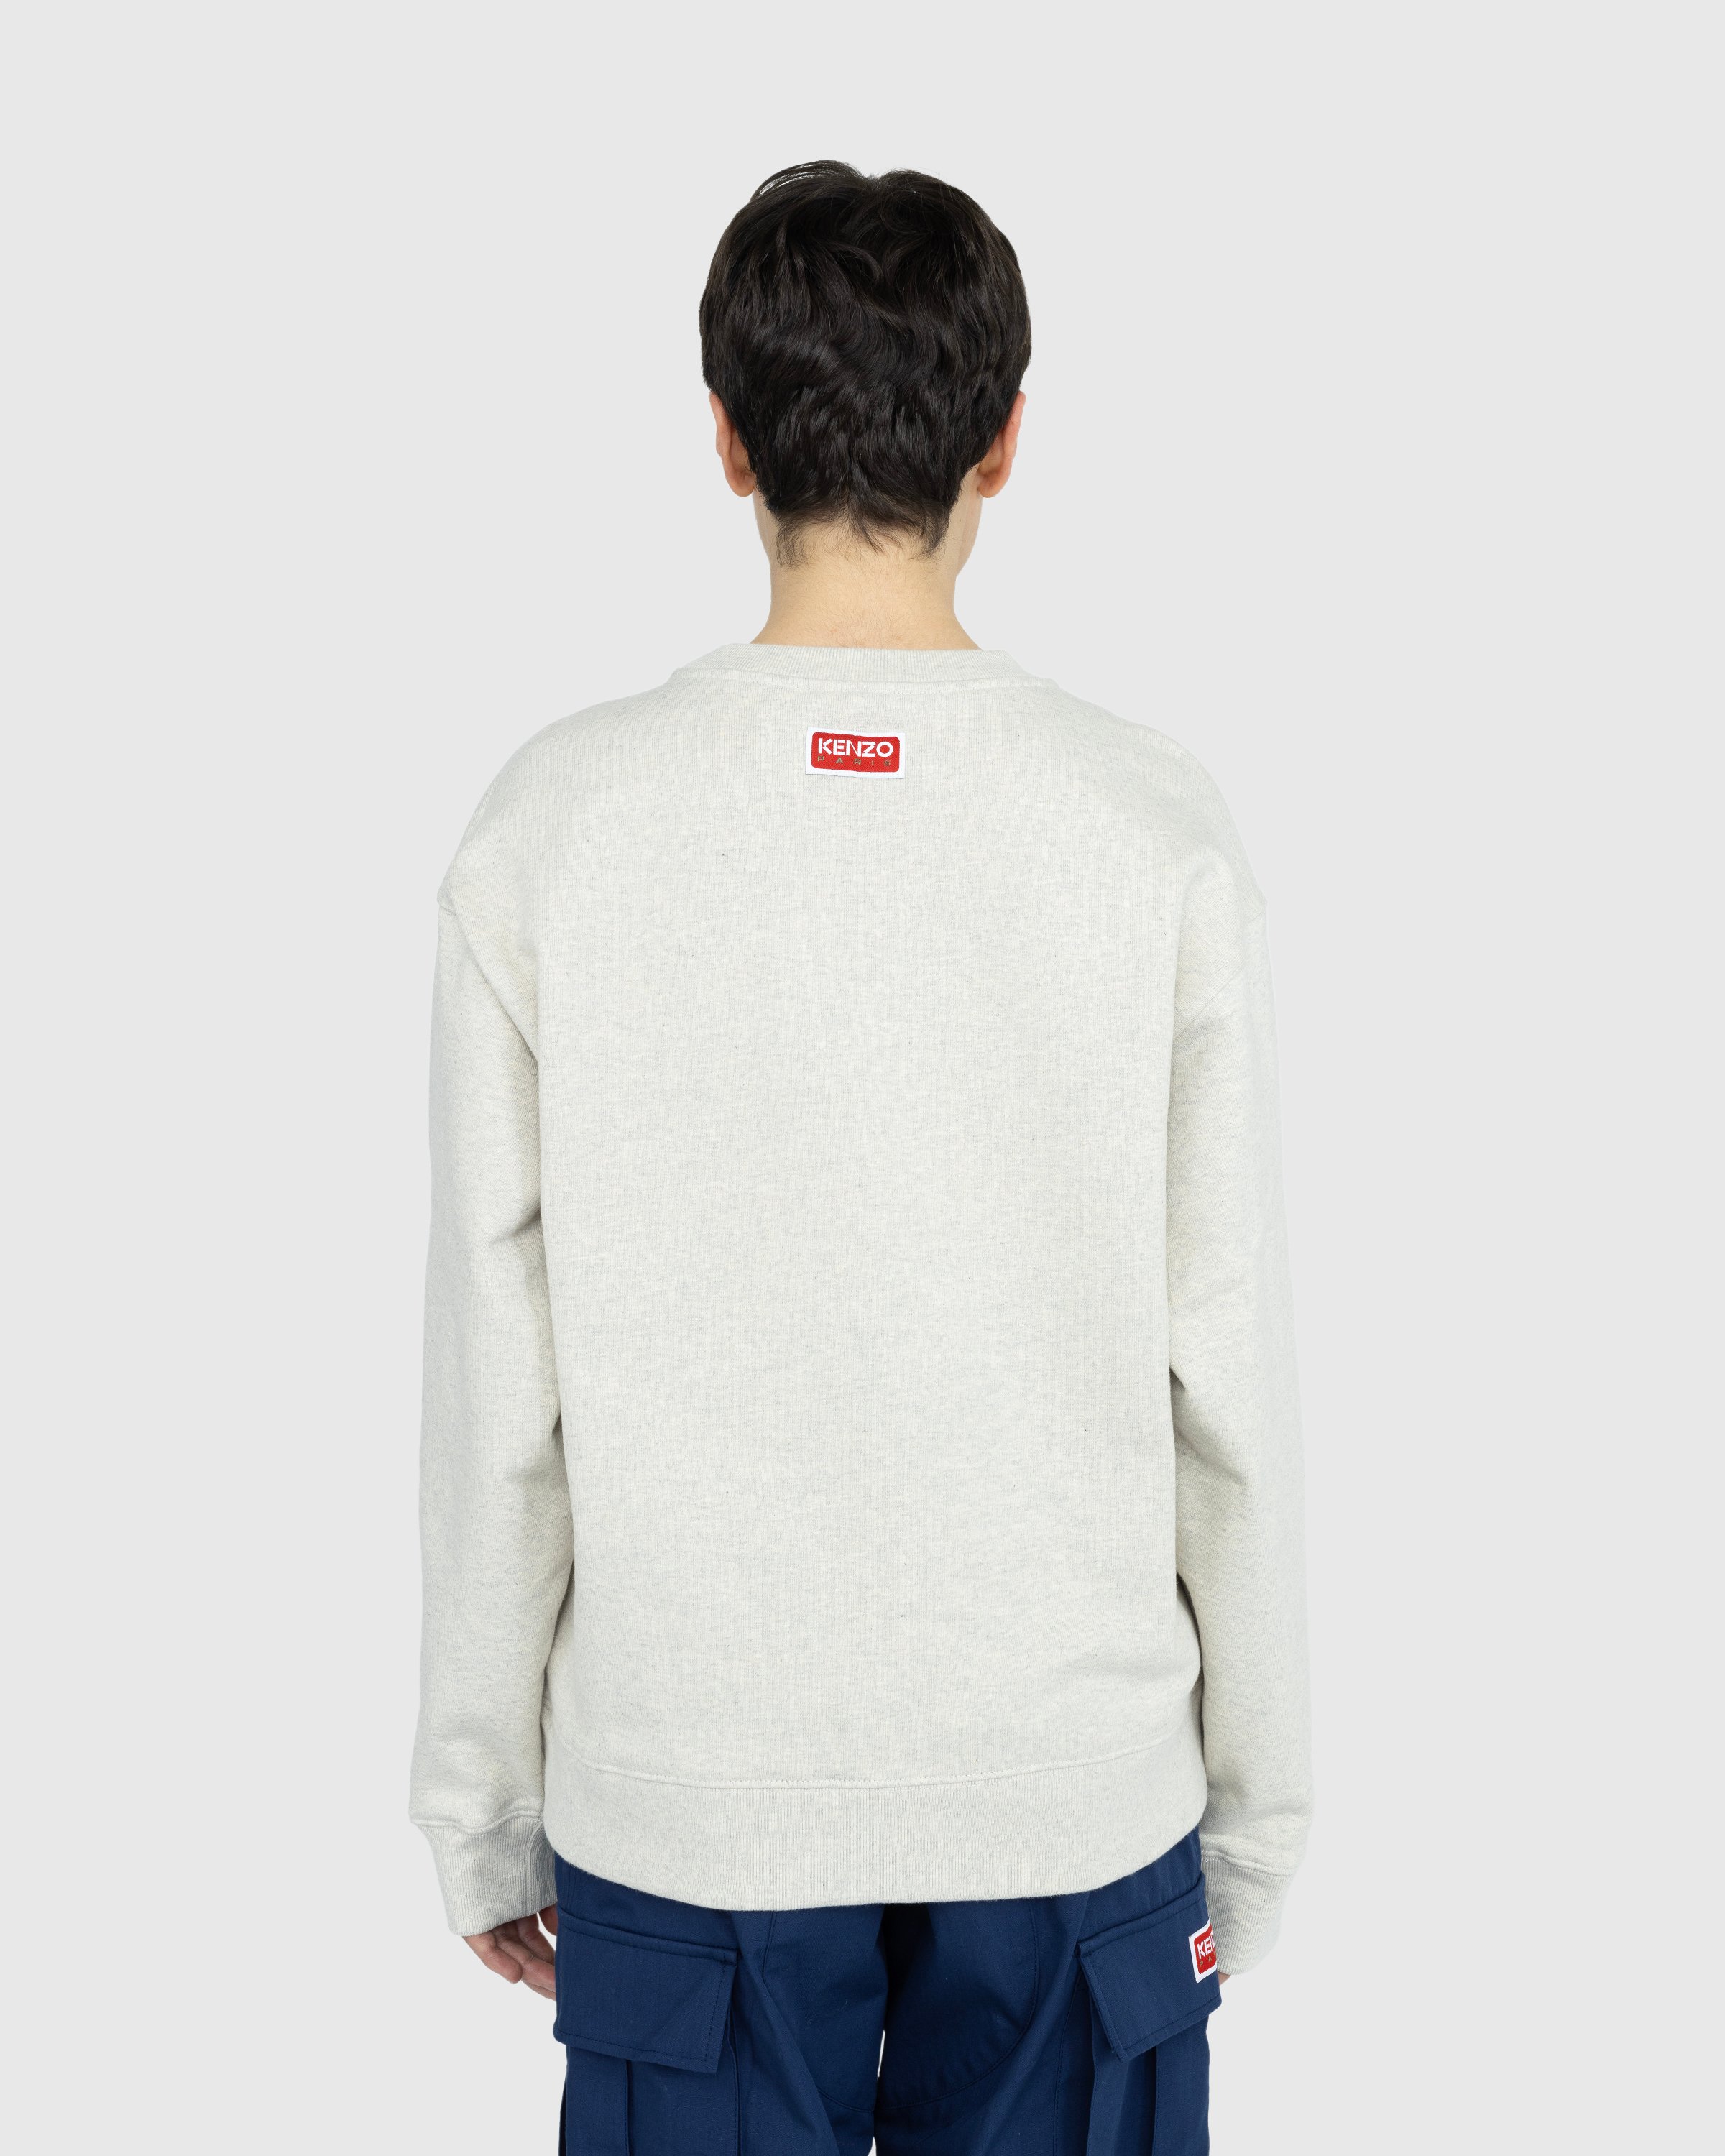 Kenzo - ‘BOKE FLOWER’ Sweatshirt - Clothing - Grey - Image 4